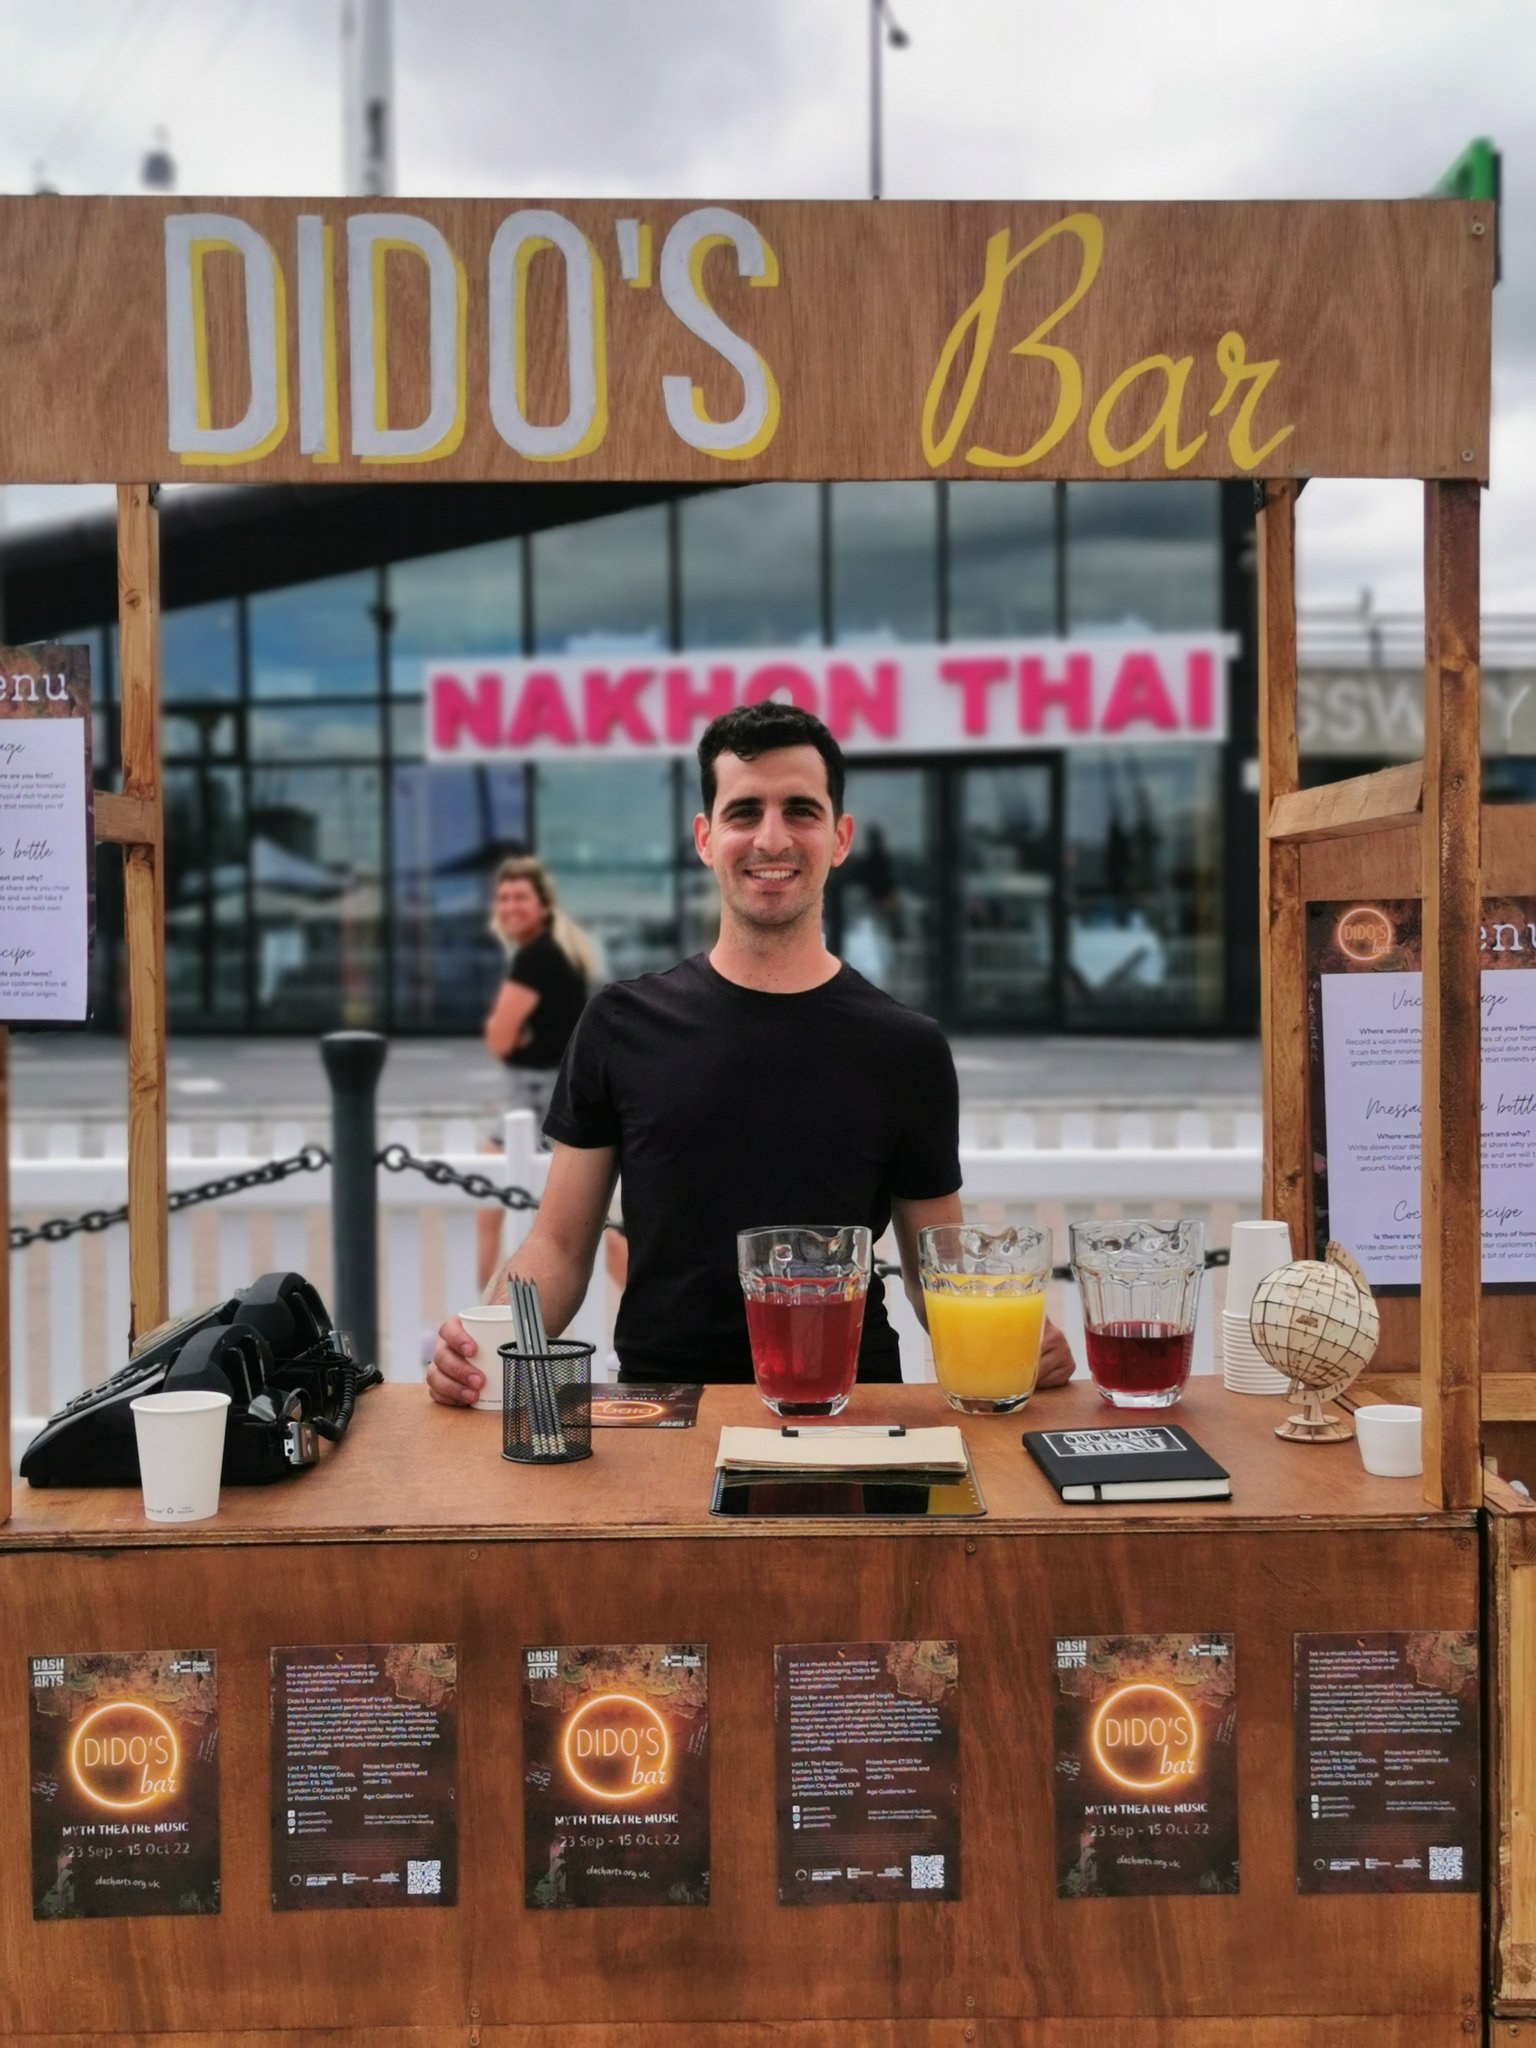 Didos's Bar stand outside Nakhon Thai restaurant in the Royal Docks